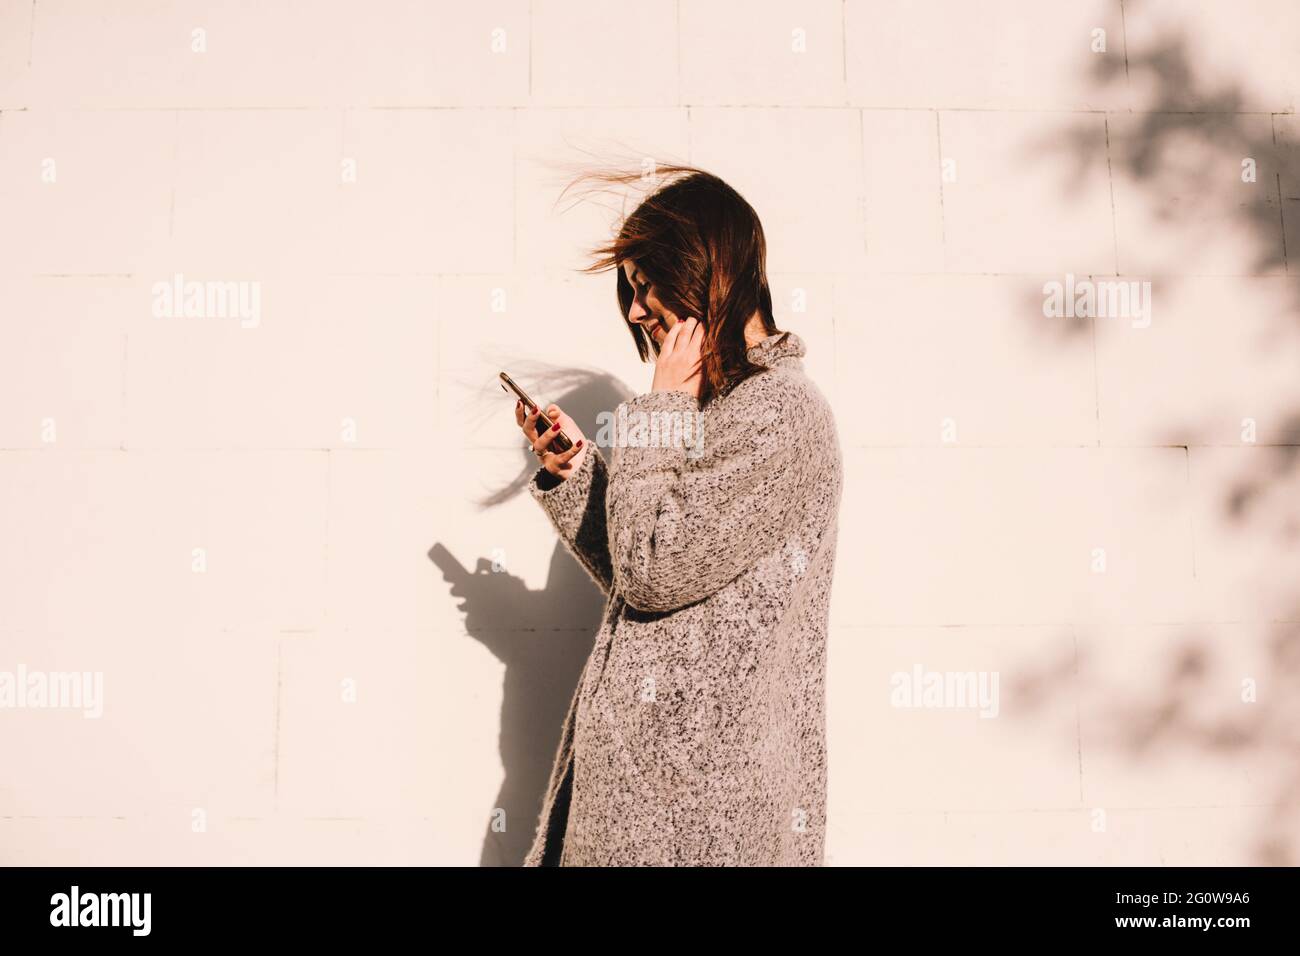 Vue latérale d'une femme heureuse utilisant un smartphone en se tenant contre le mur Banque D'Images